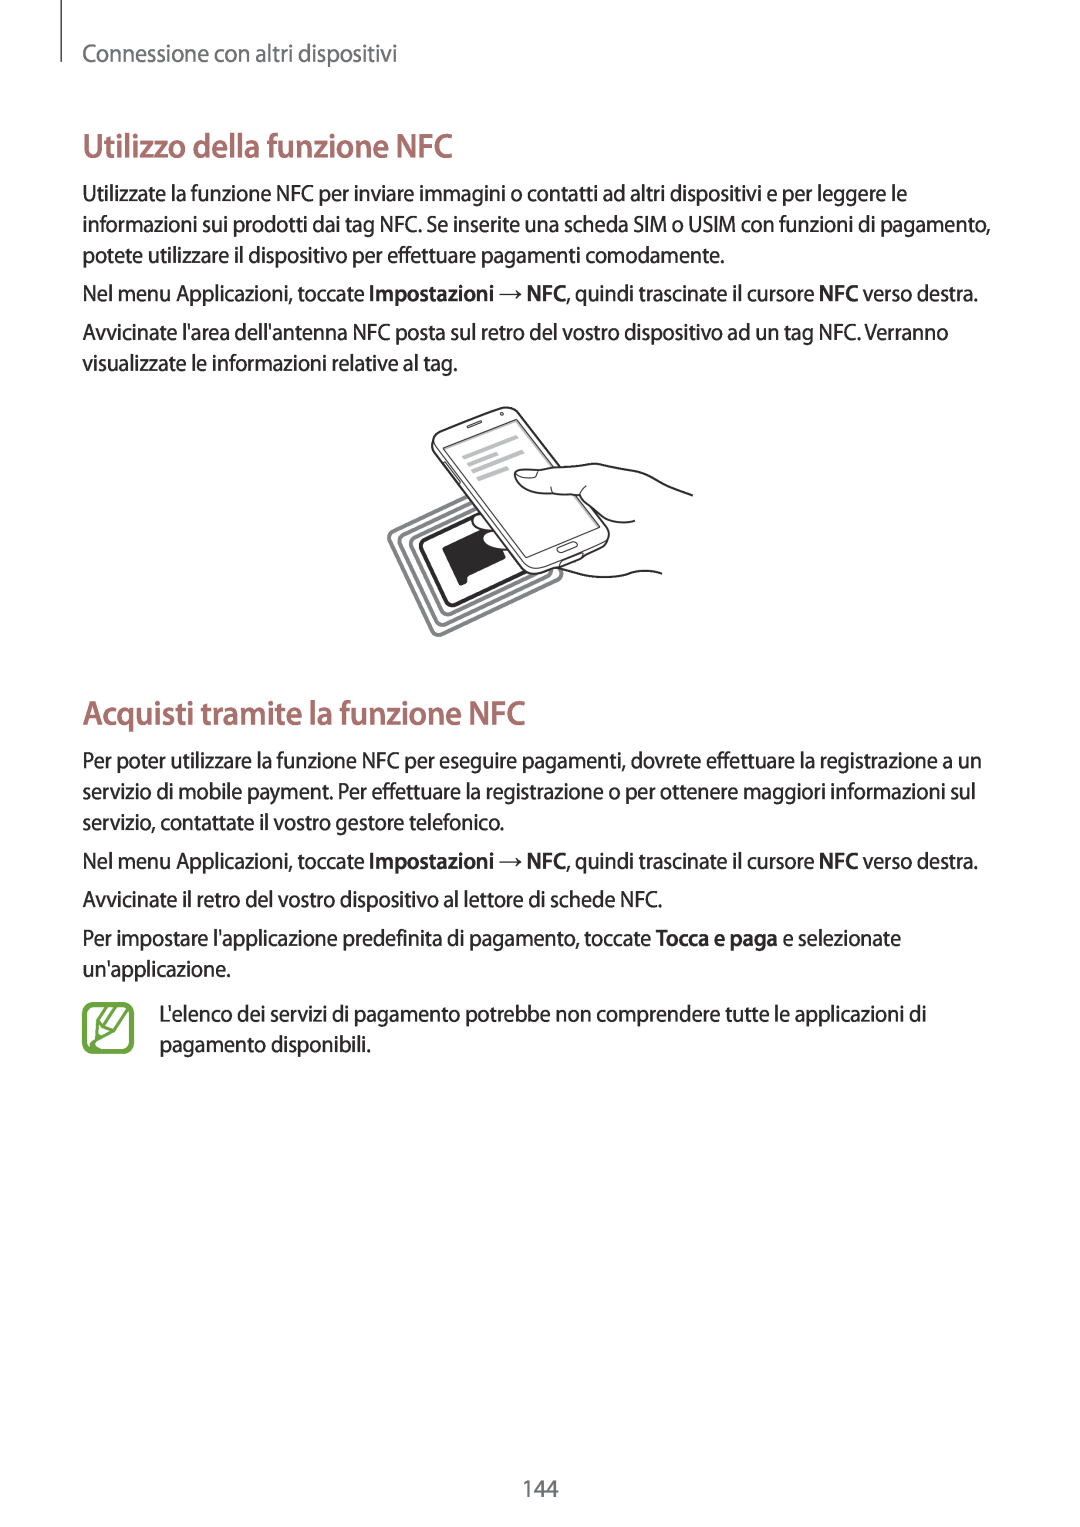 Samsung SM-G900FZDATPL Utilizzo della funzione NFC, Acquisti tramite la funzione NFC, Connessione con altri dispositivi 